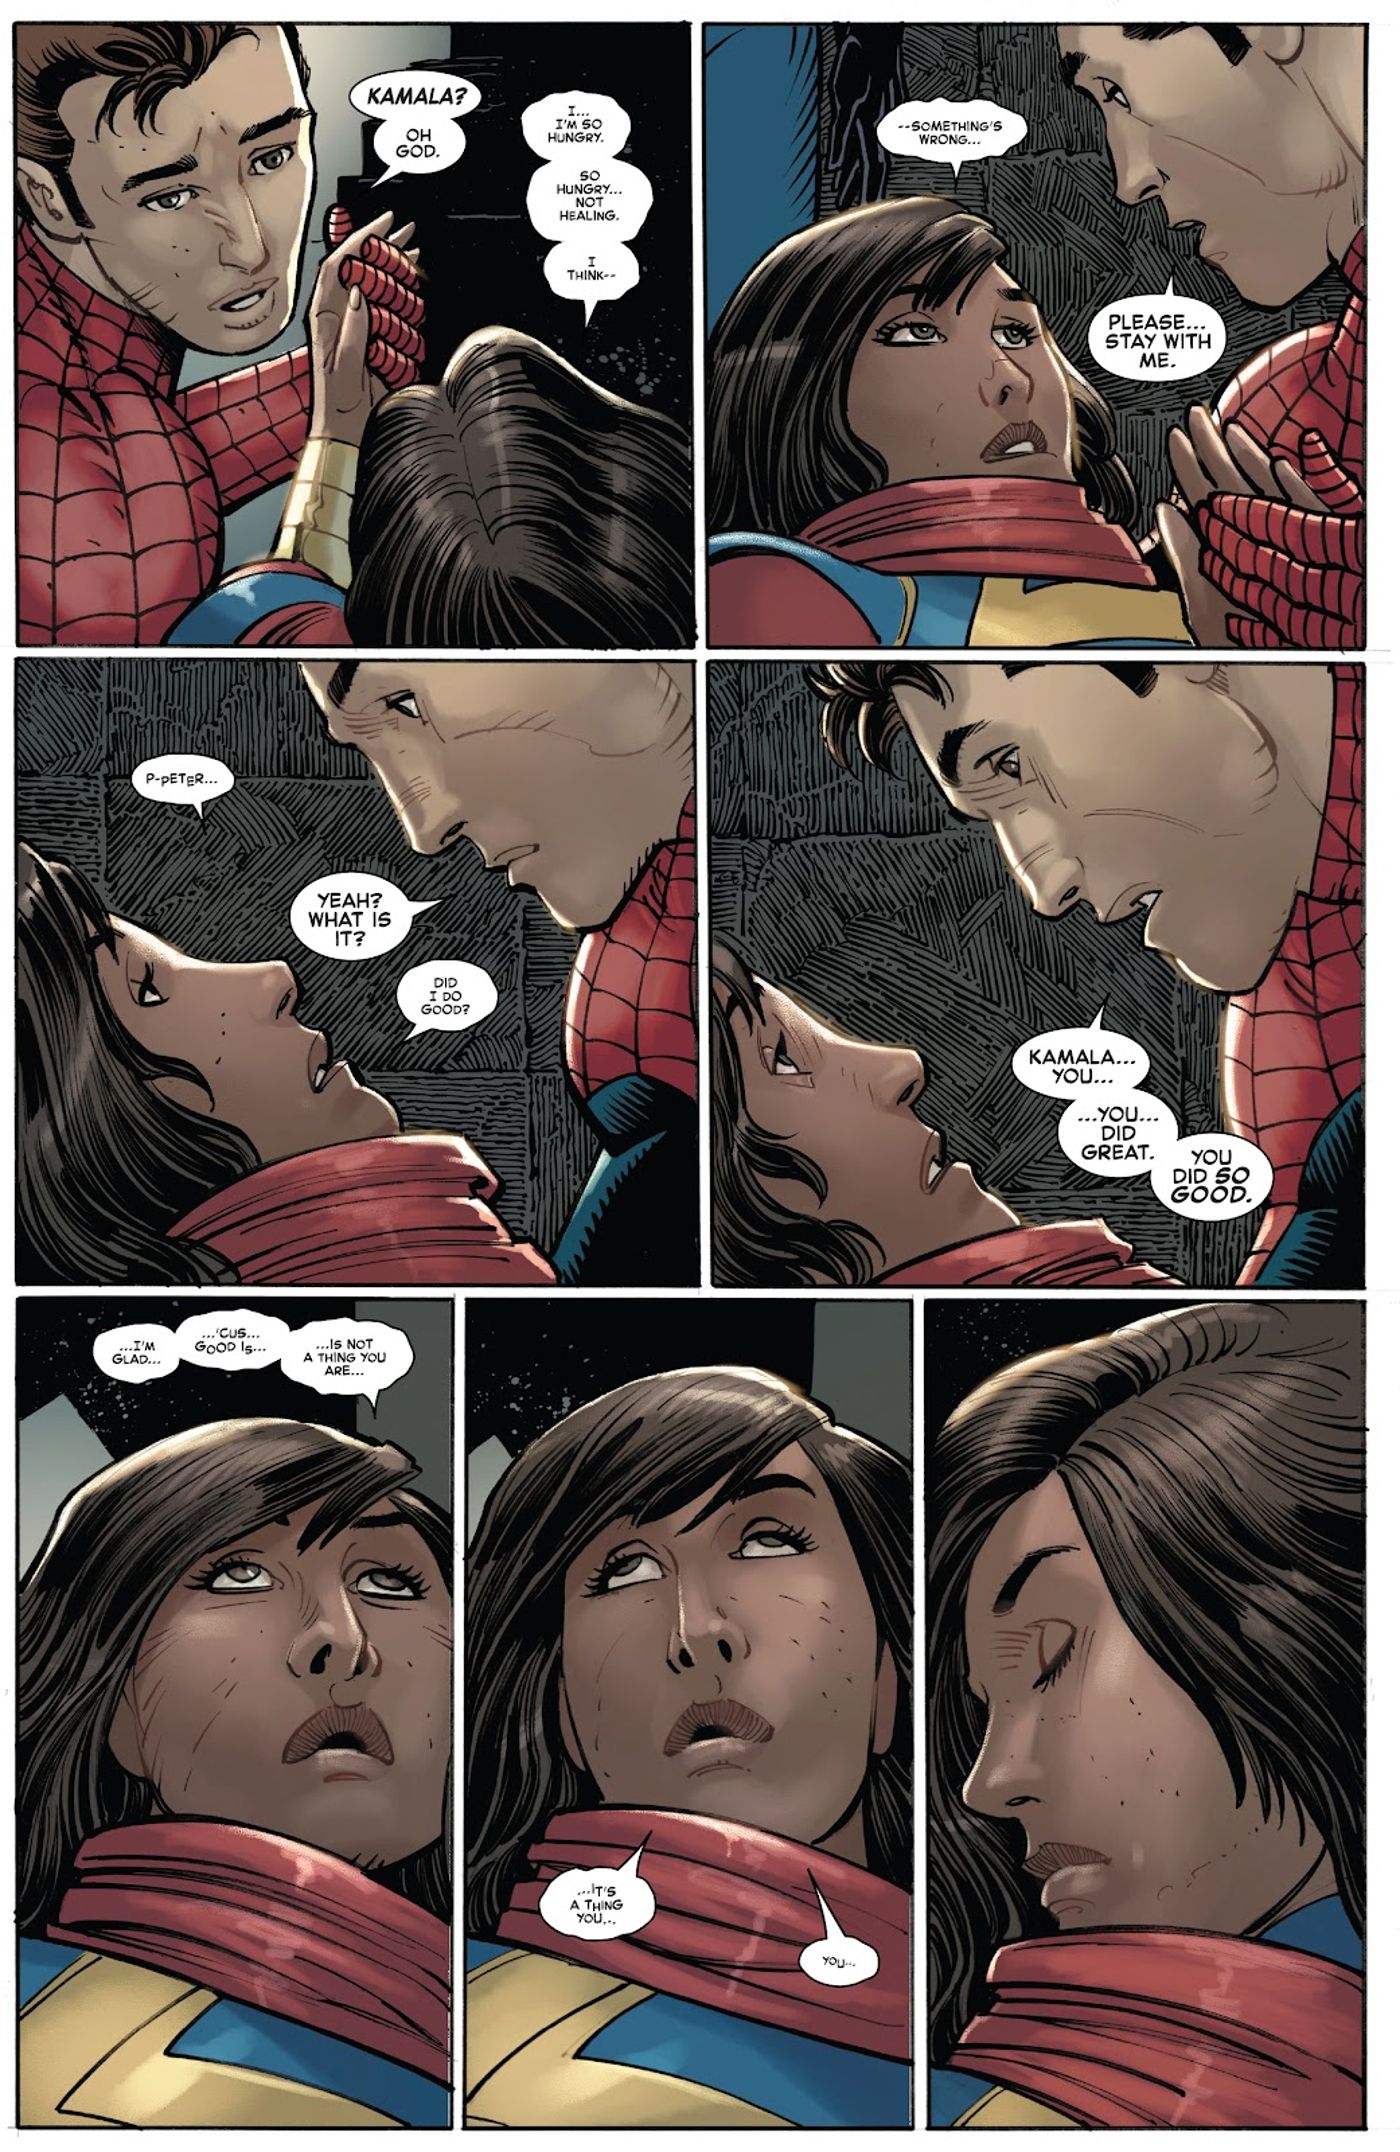 Ms. Marvel dies in Amazing Spider-Man